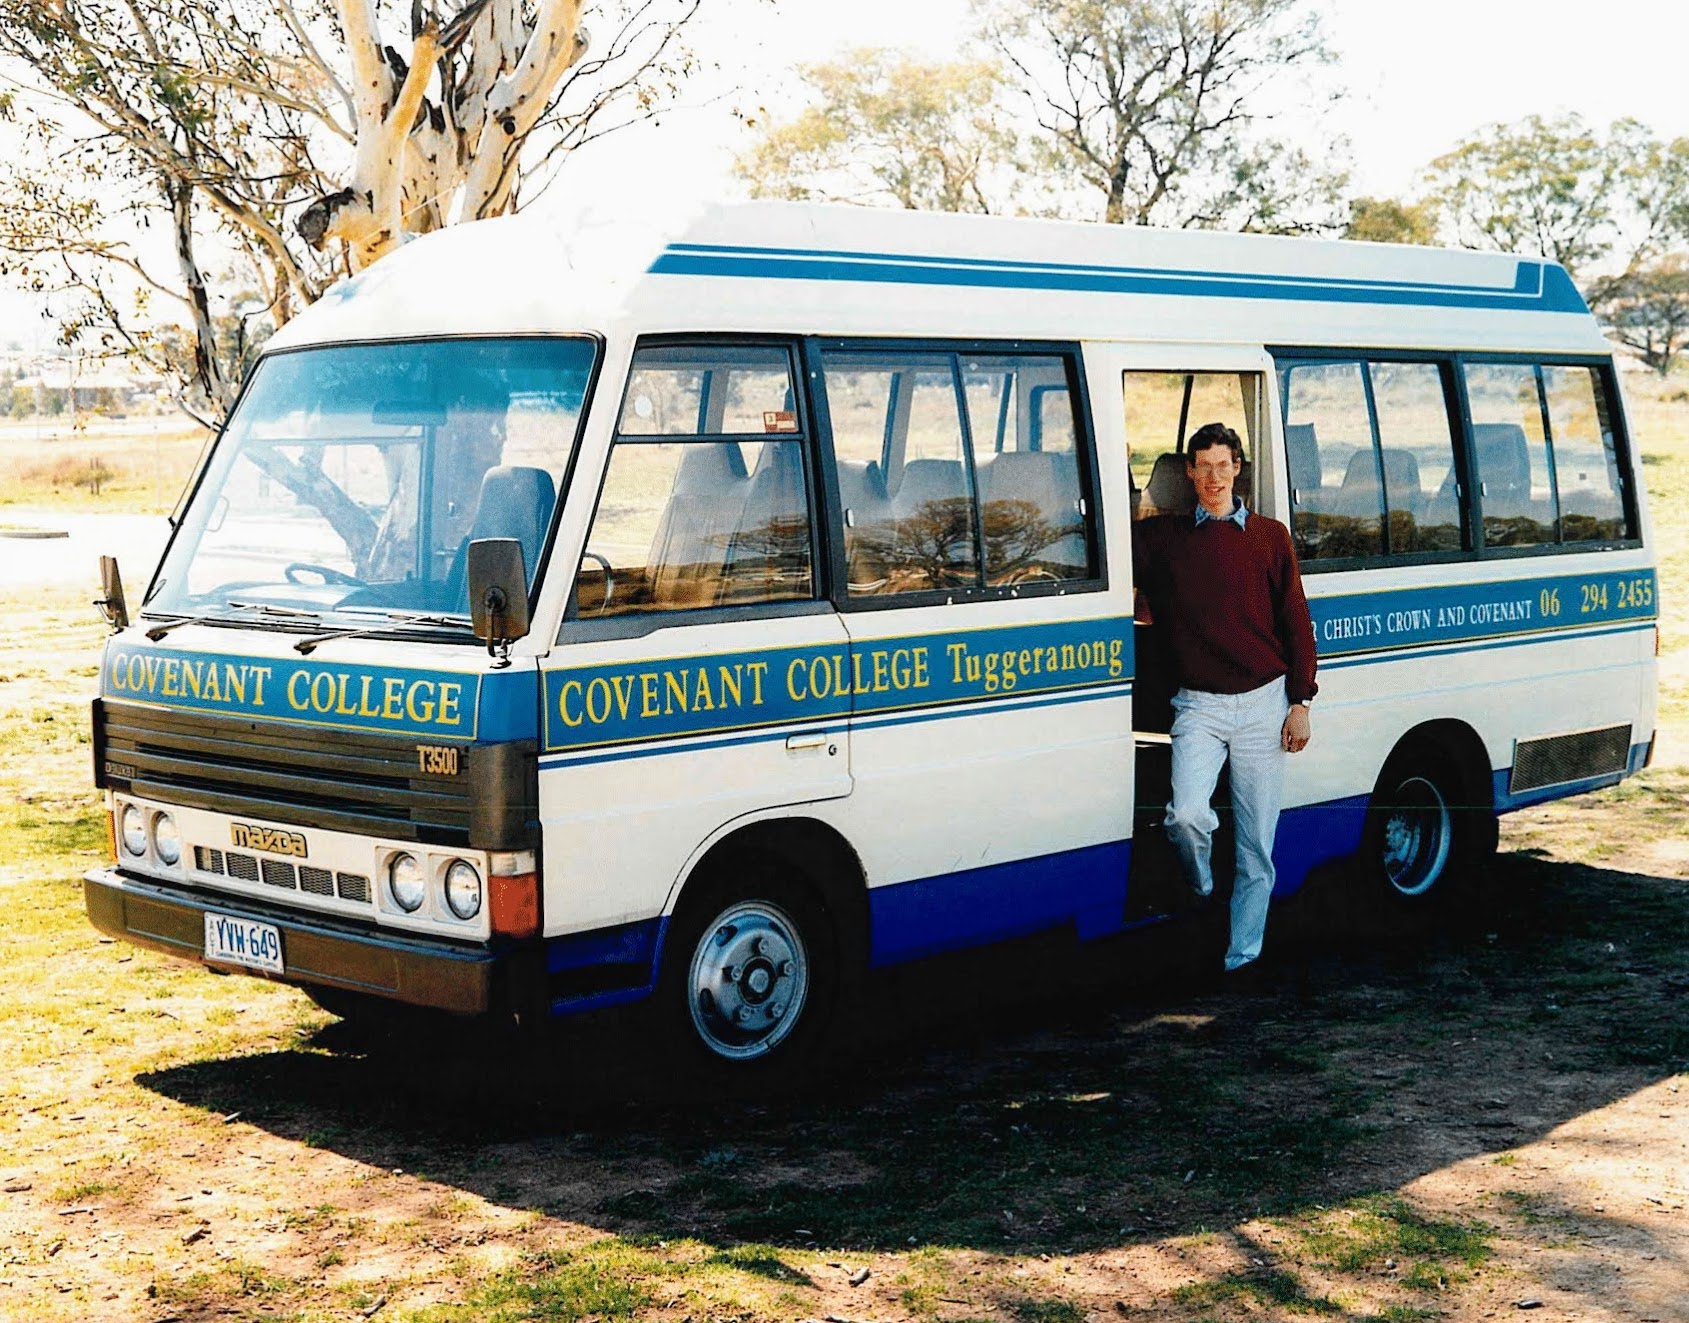 1995 Covenant College bus